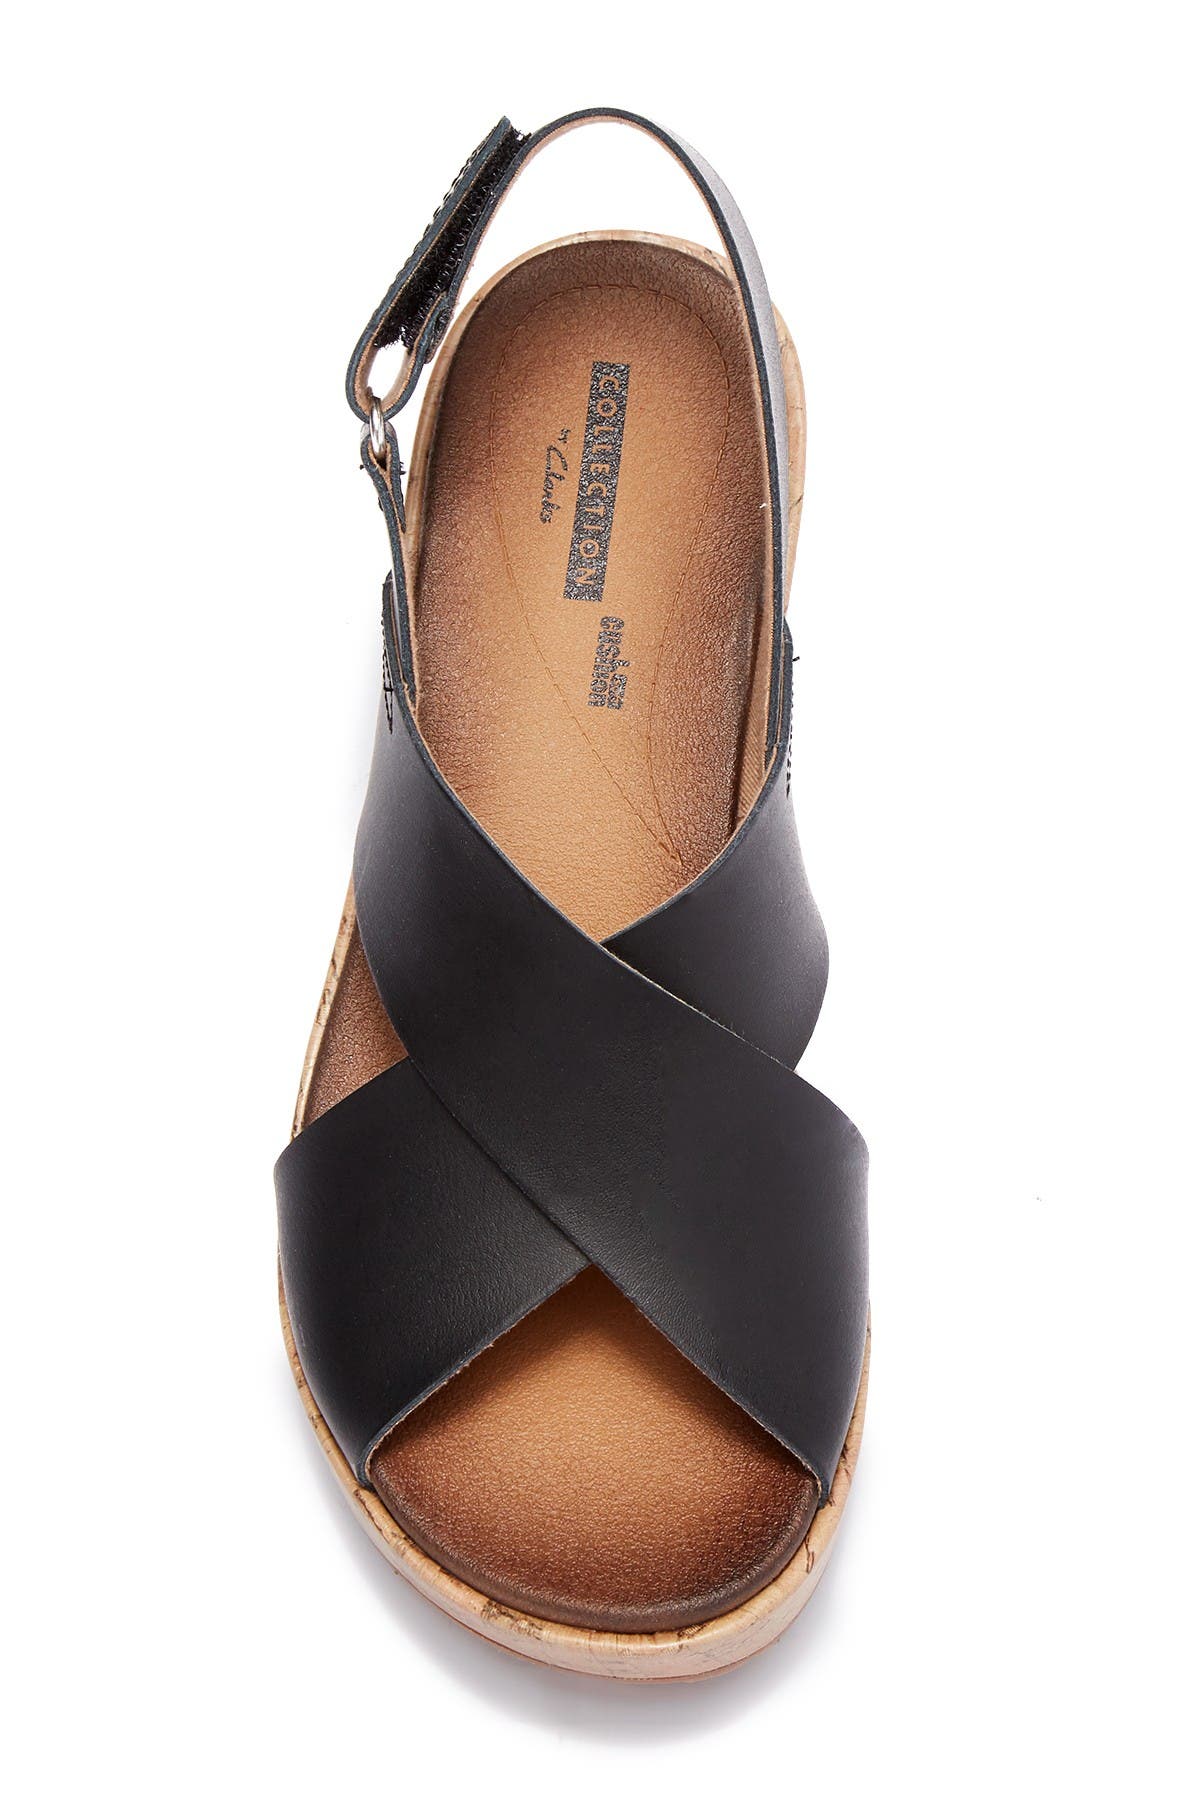 stasha hale leather wedge sandal